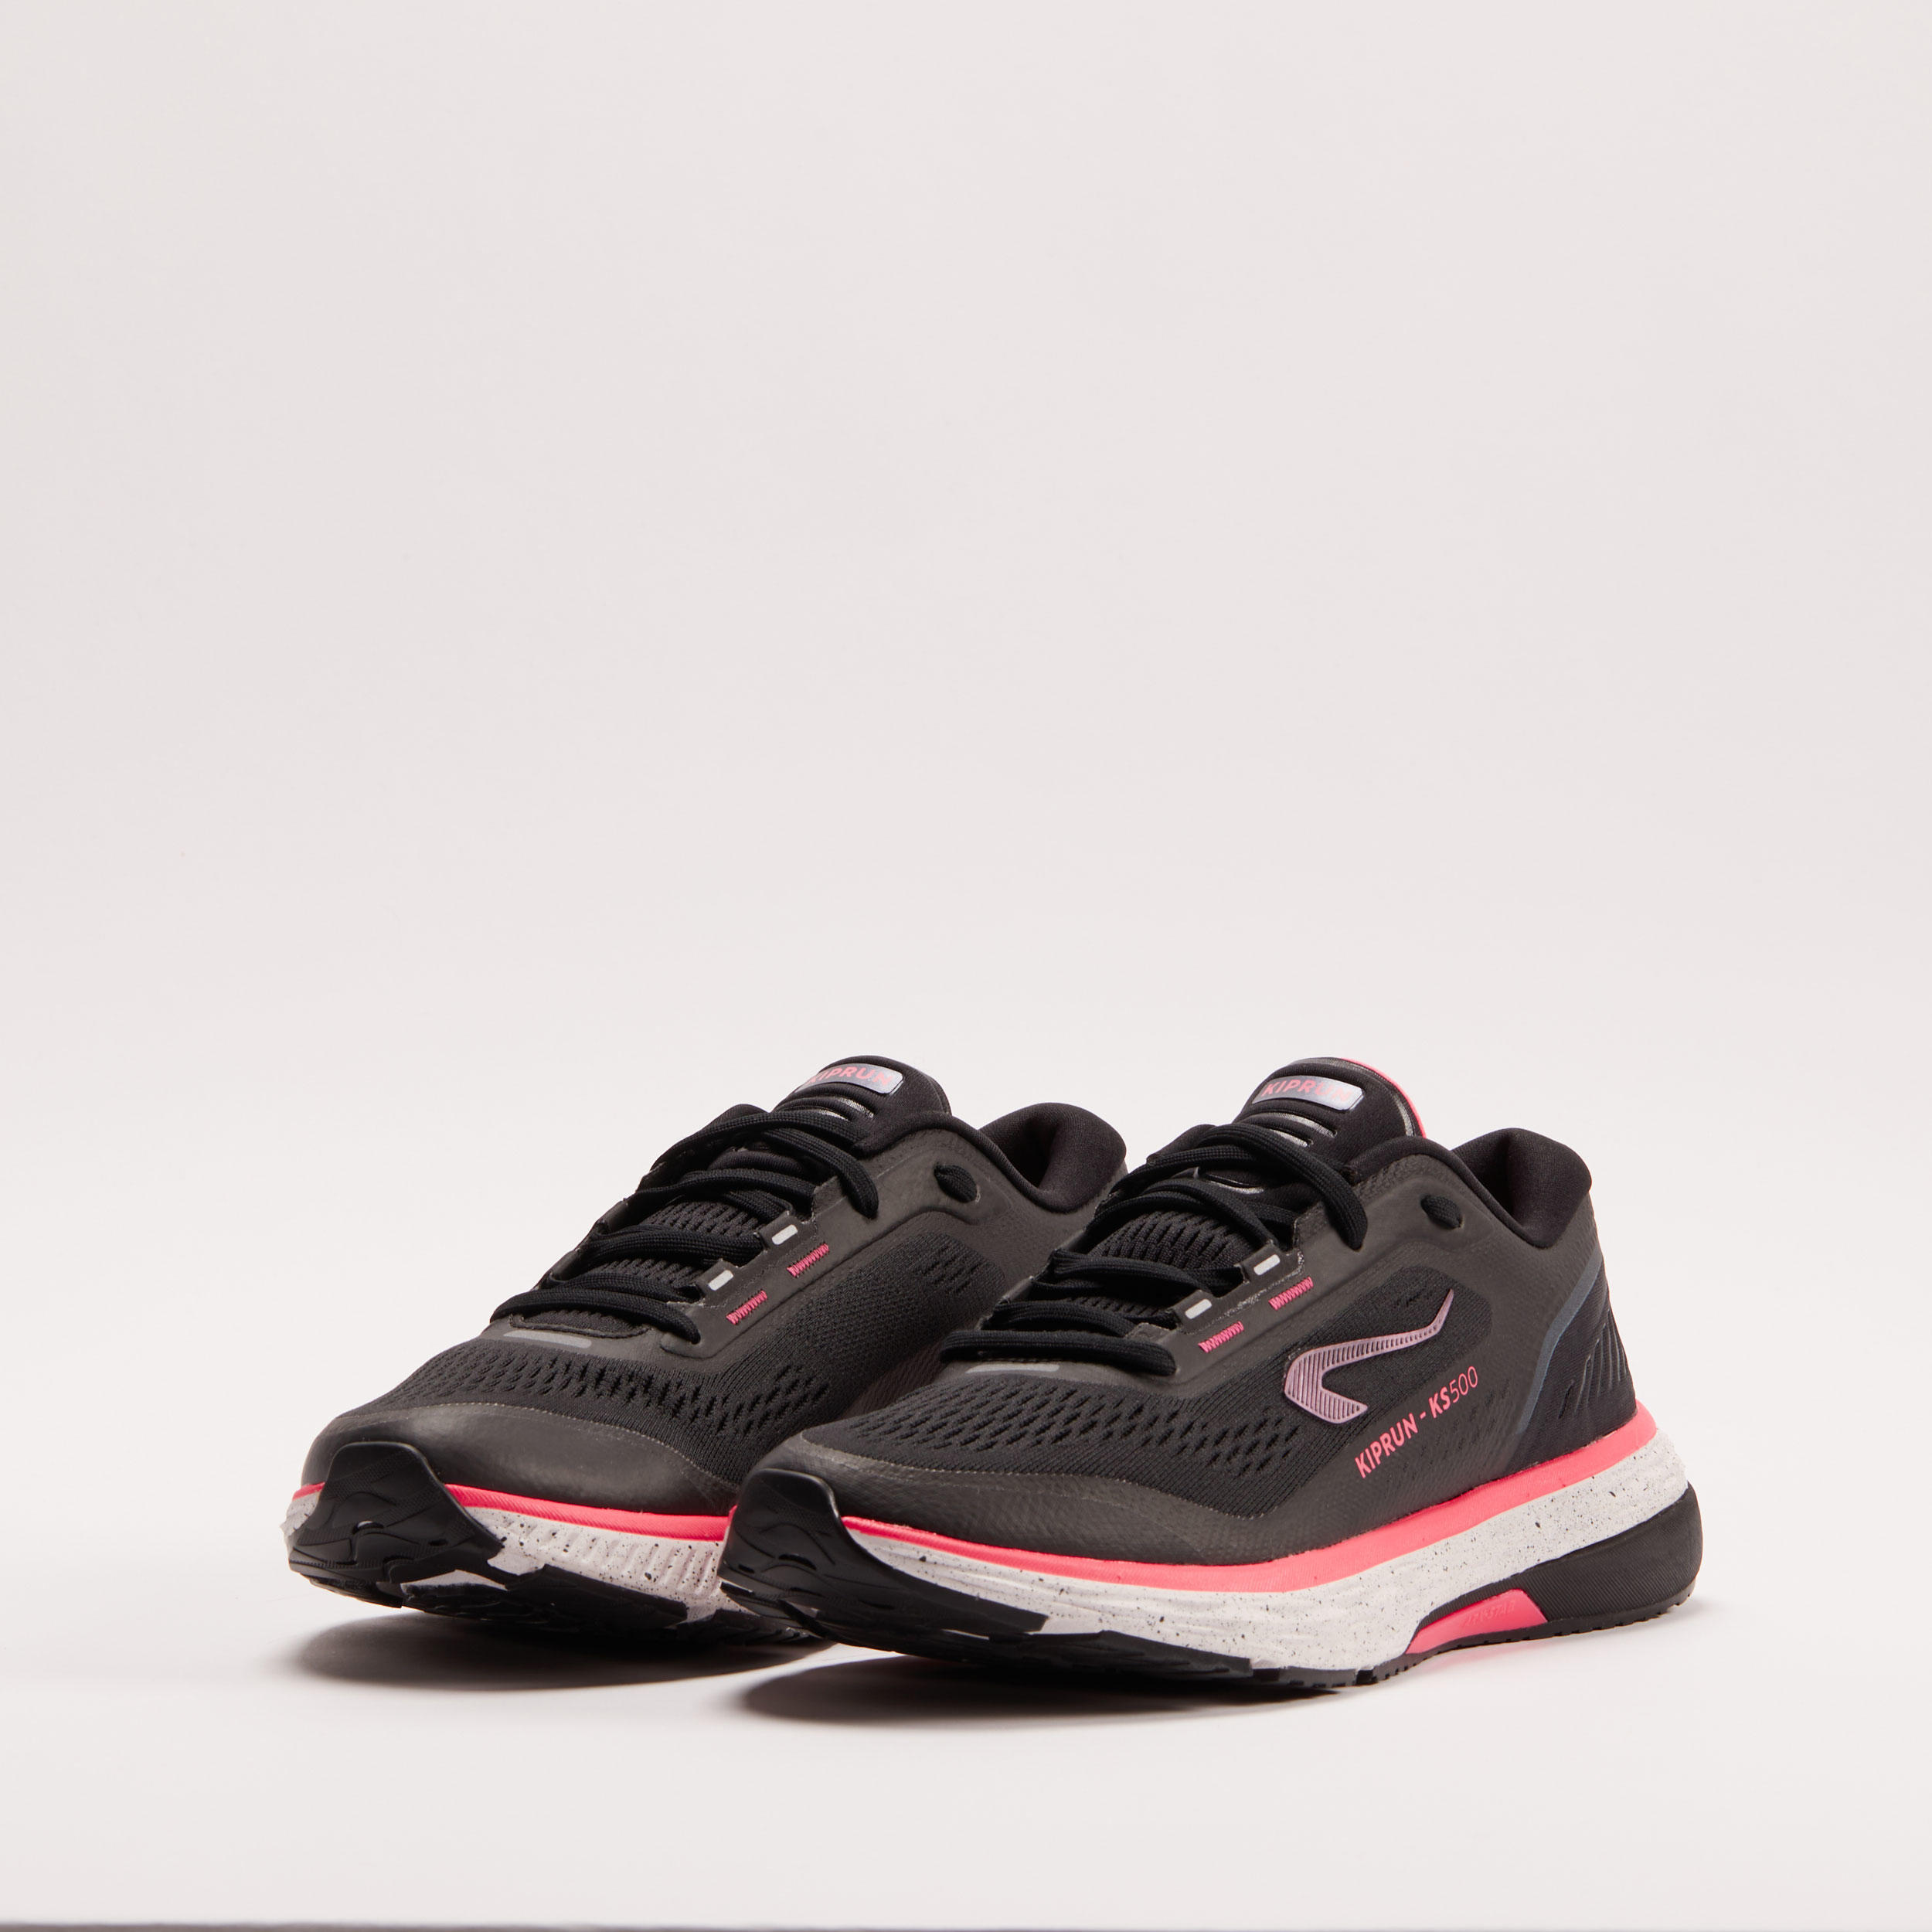 Meadow Women's Pink Sneakers | Aldo Shoes